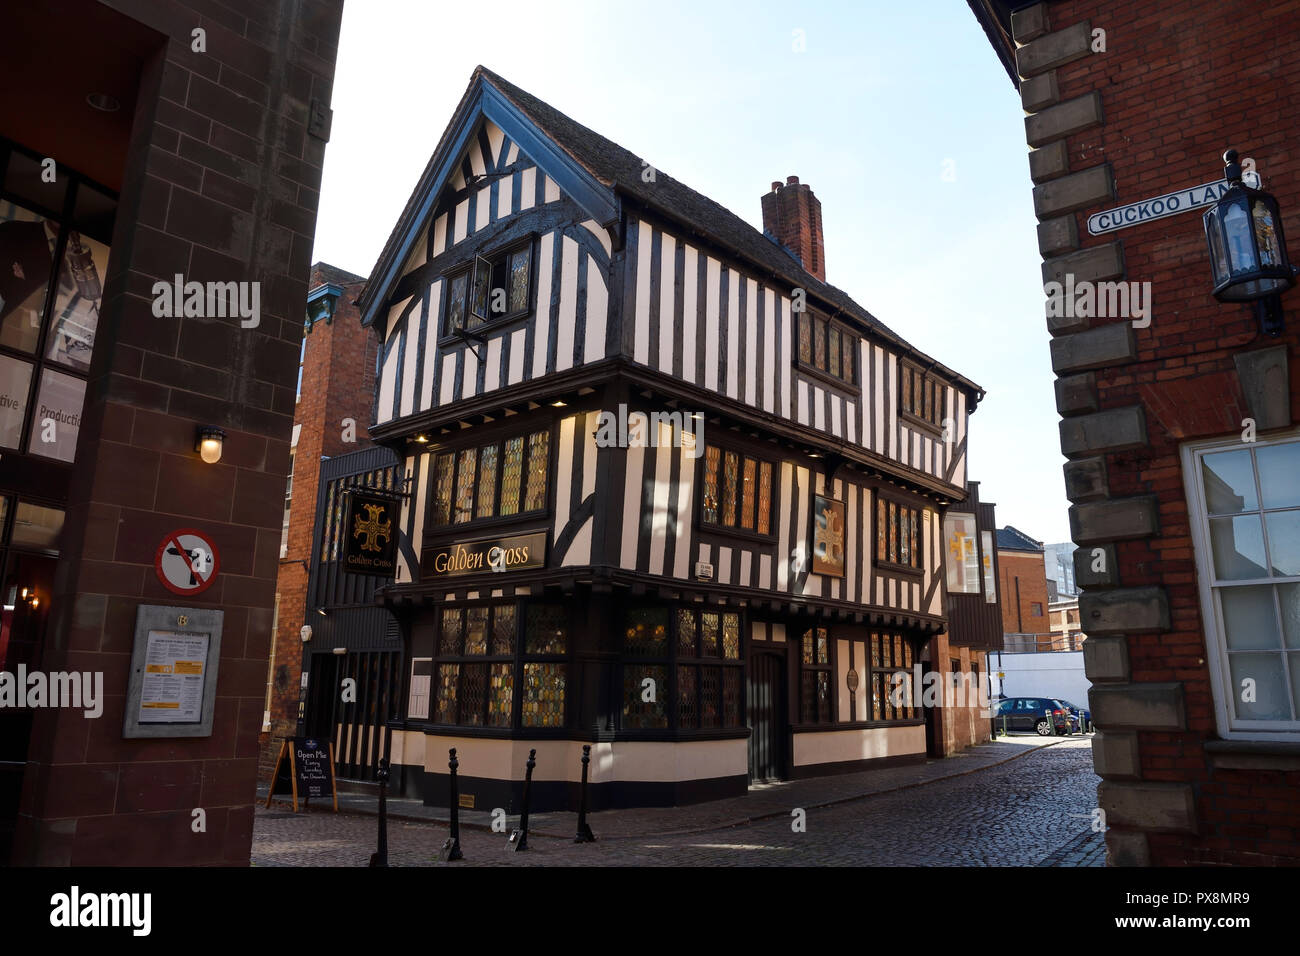 La cité médiévale en bois Construction de la Croix d'or pub sur Hay Lane, dans le centre-ville de Coventry UK Banque D'Images